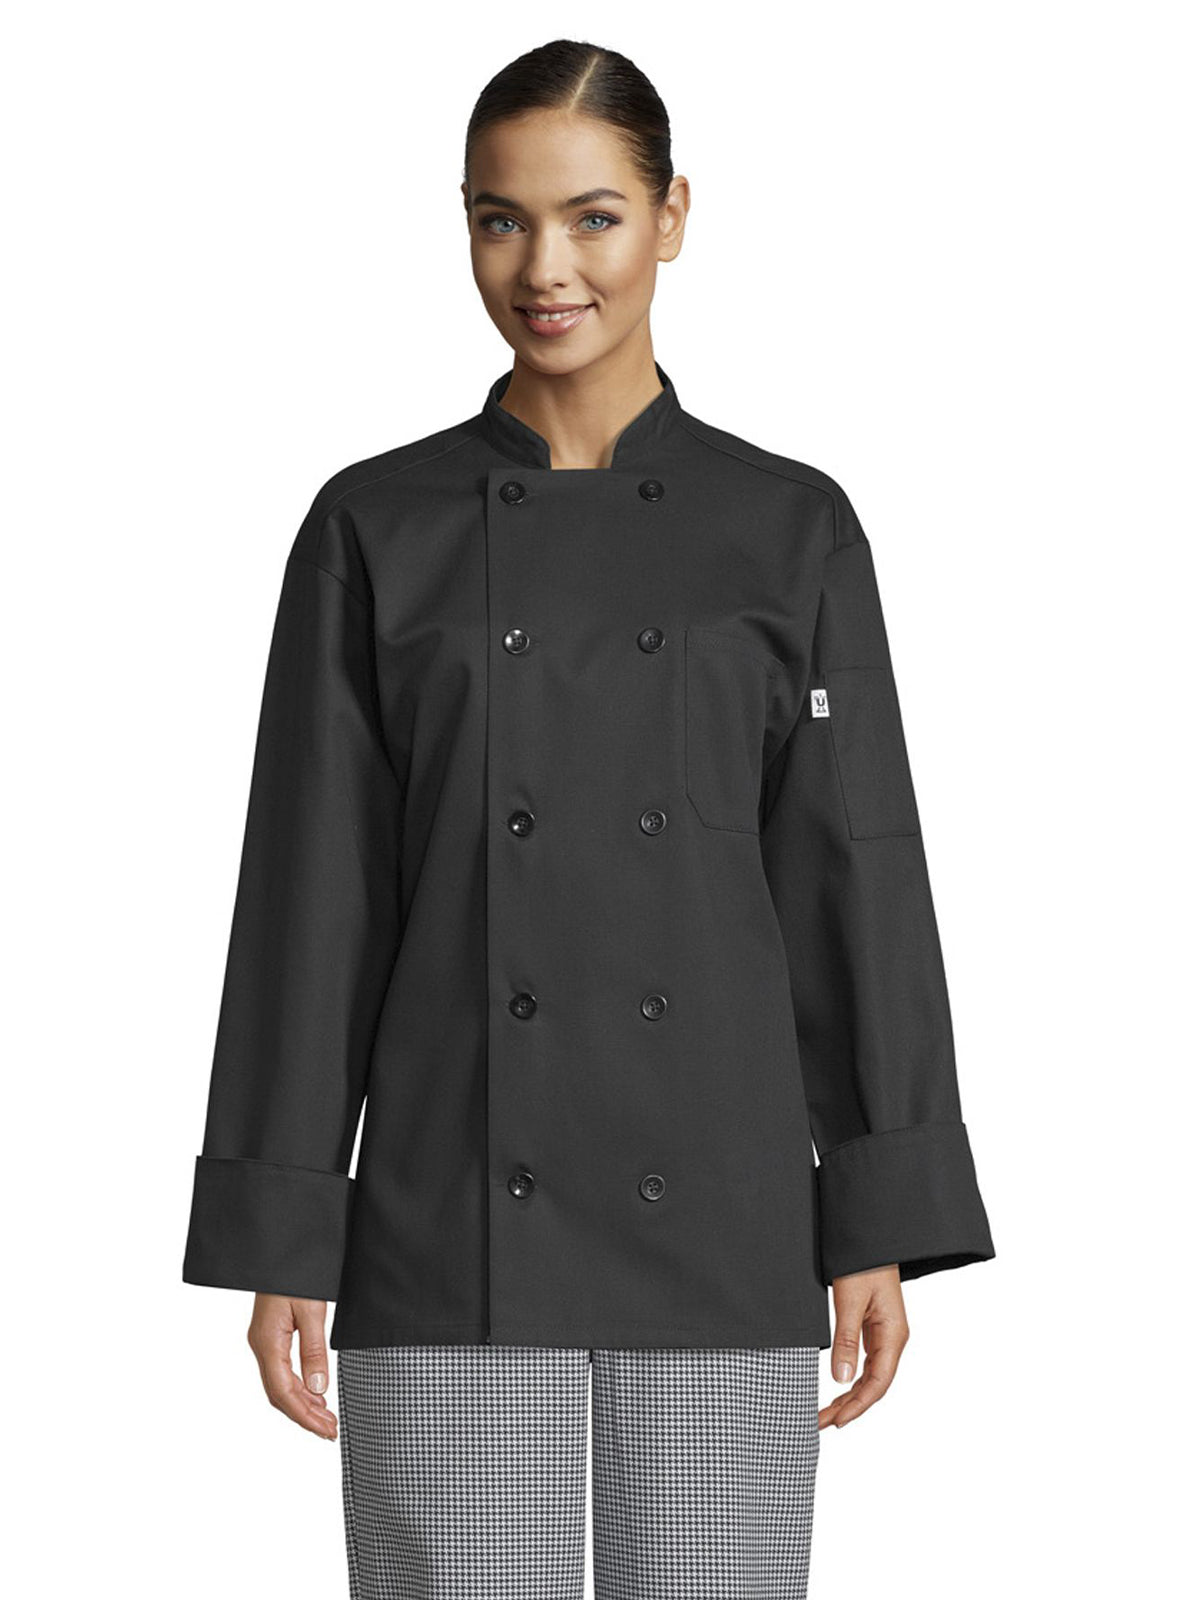 Unisex Classic Chef Coat - 0402 - Black